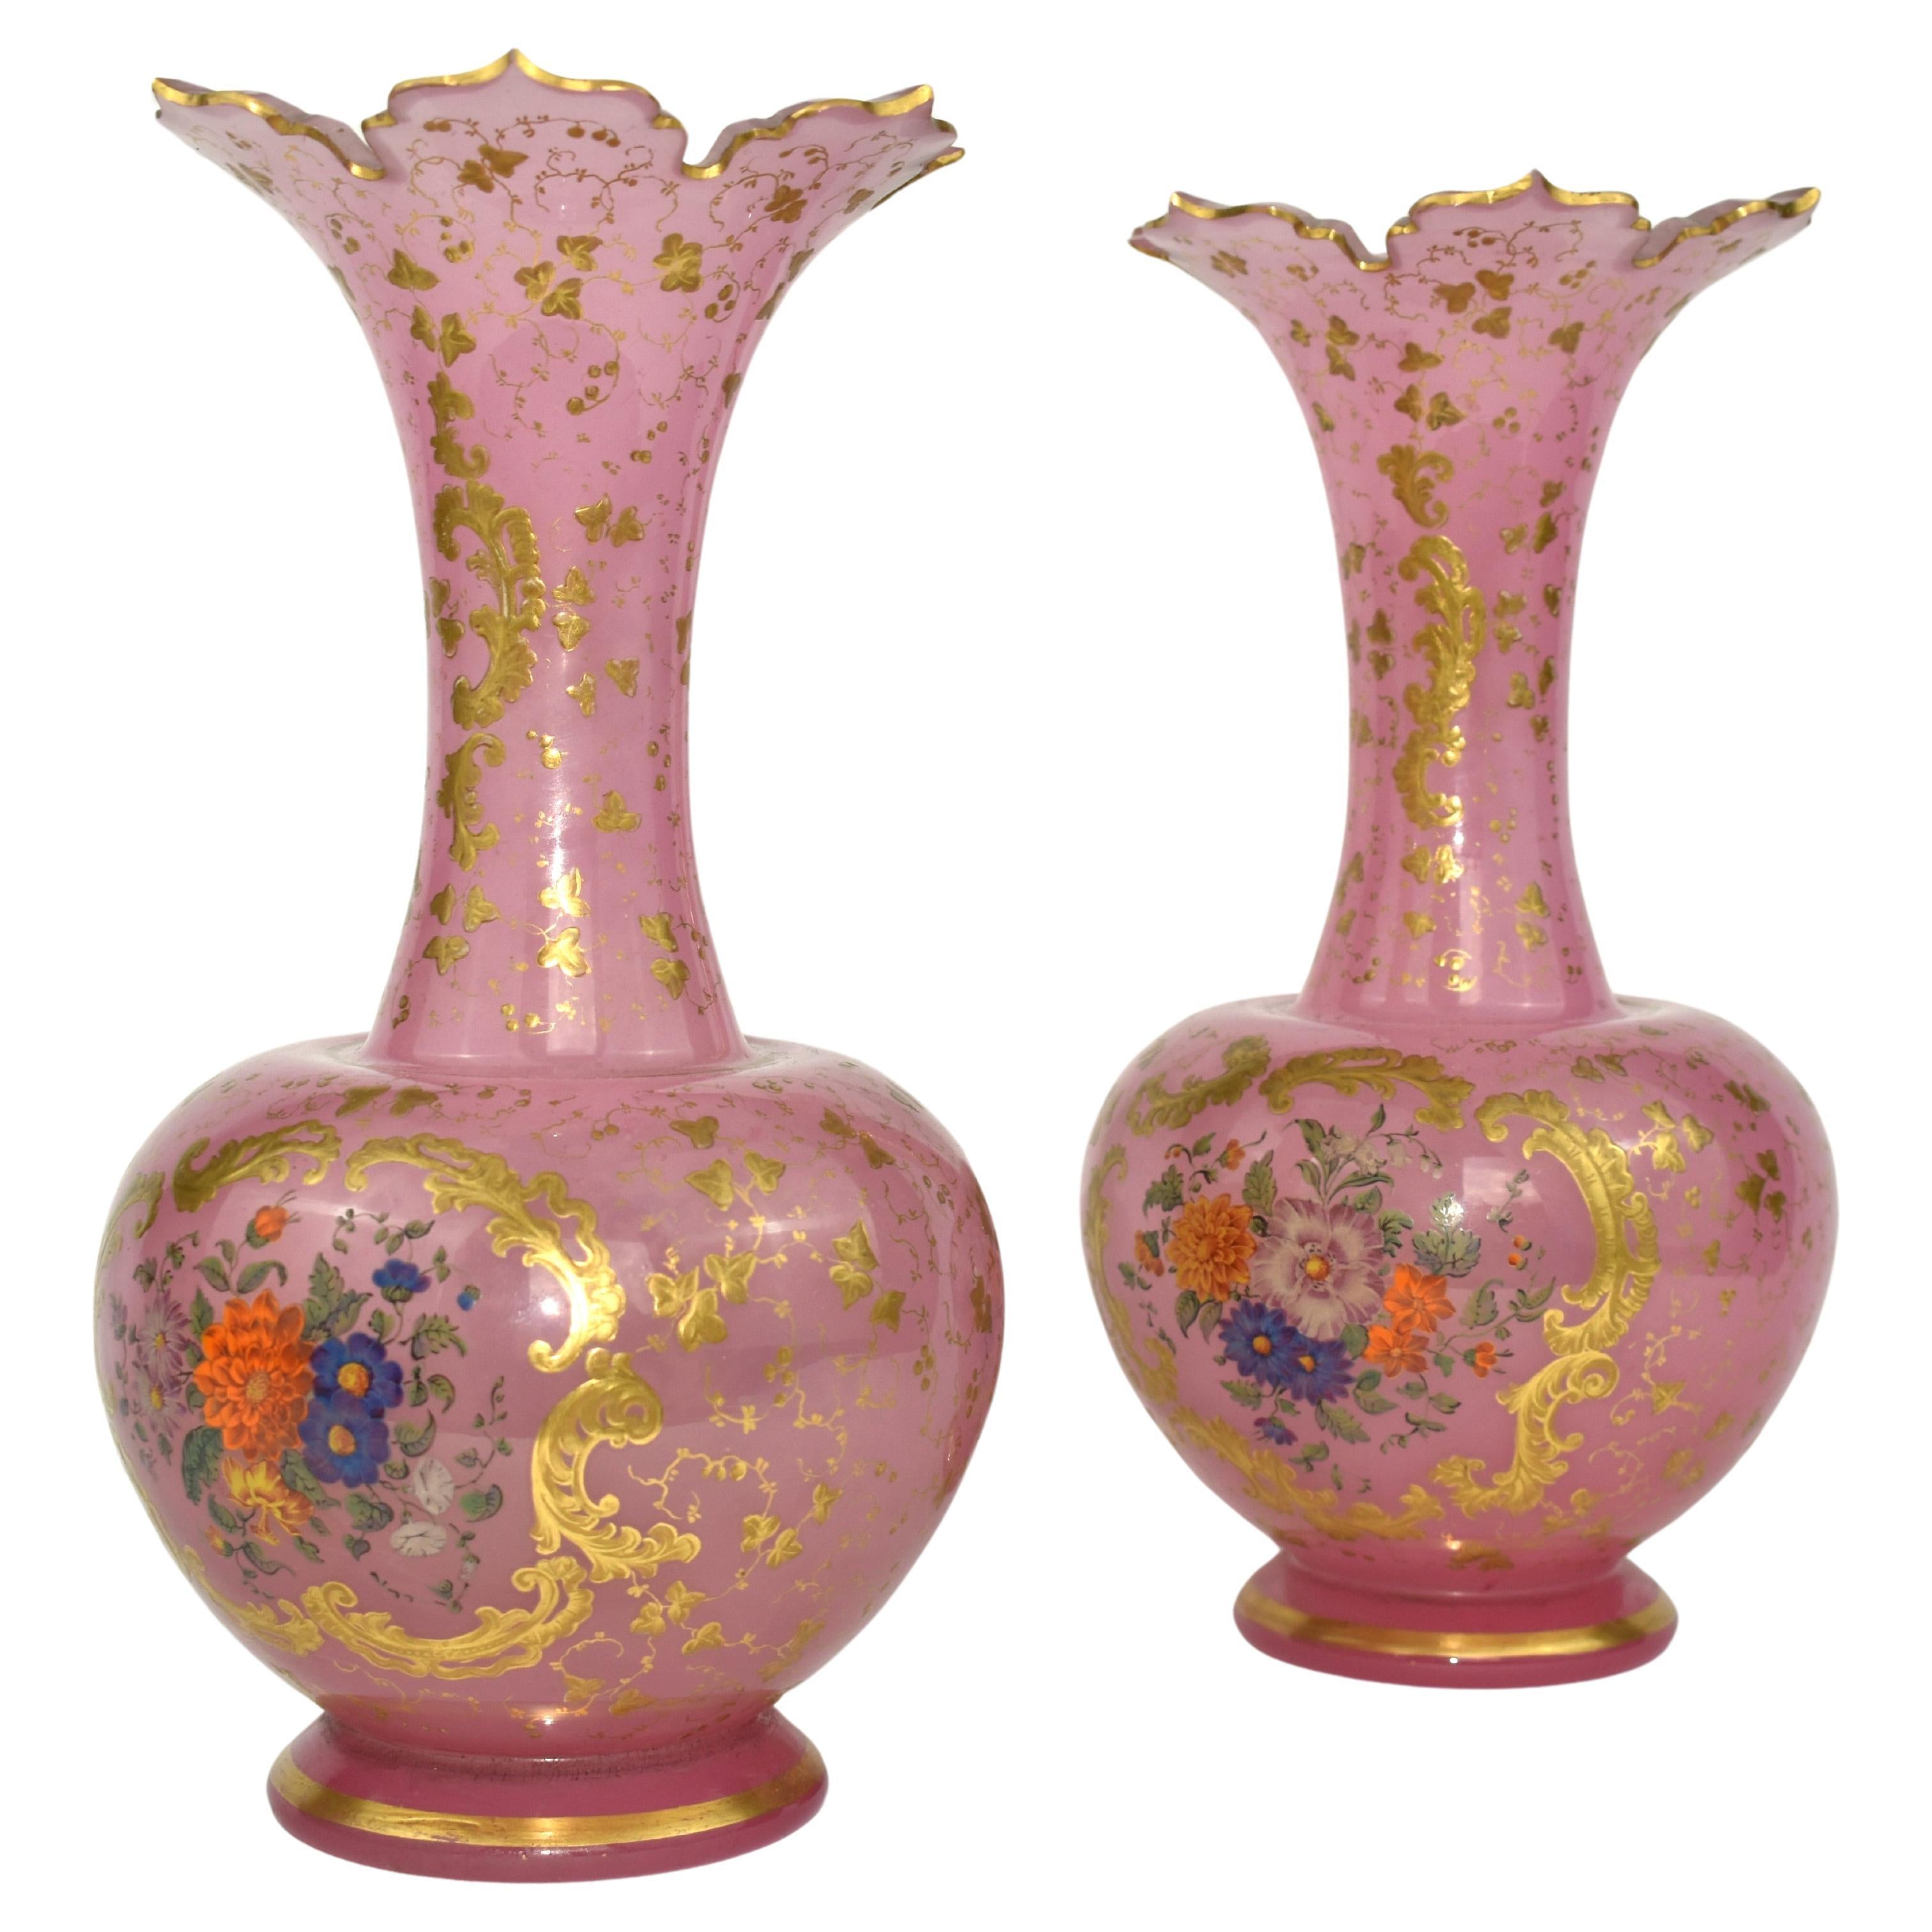 Ein außergewöhnliches Paar Vasen aus emailliertem Opalglas

Runder Korpus, rundum reich handbemalt mit Emailledekoration aus Blumensträußen und vergoldeten Schnecken

schön geschliffener und vergoldeter Rand

Bohemia, um 1860